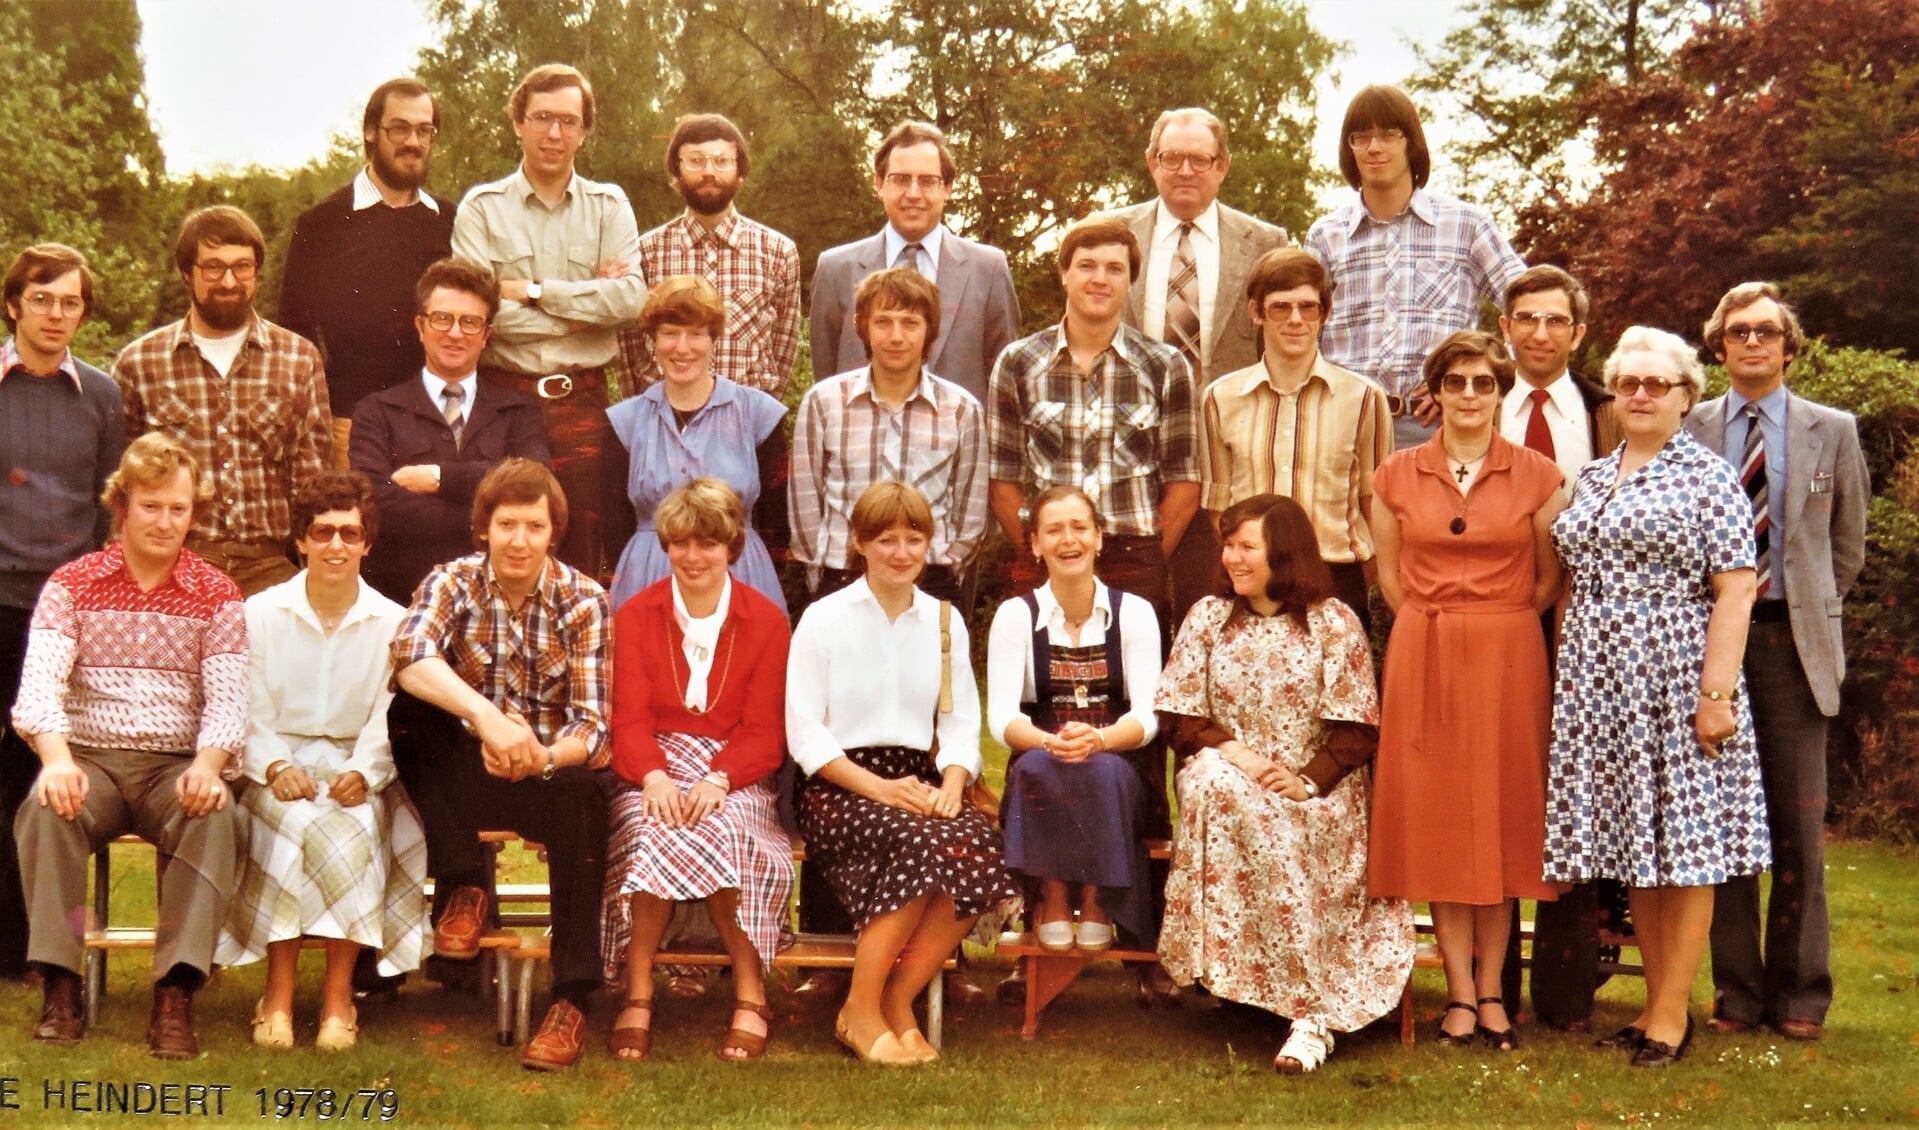 Het gezamenlijk onderwijzend personeel van basisschool De Heindert en basisschool Brukelum 1978.